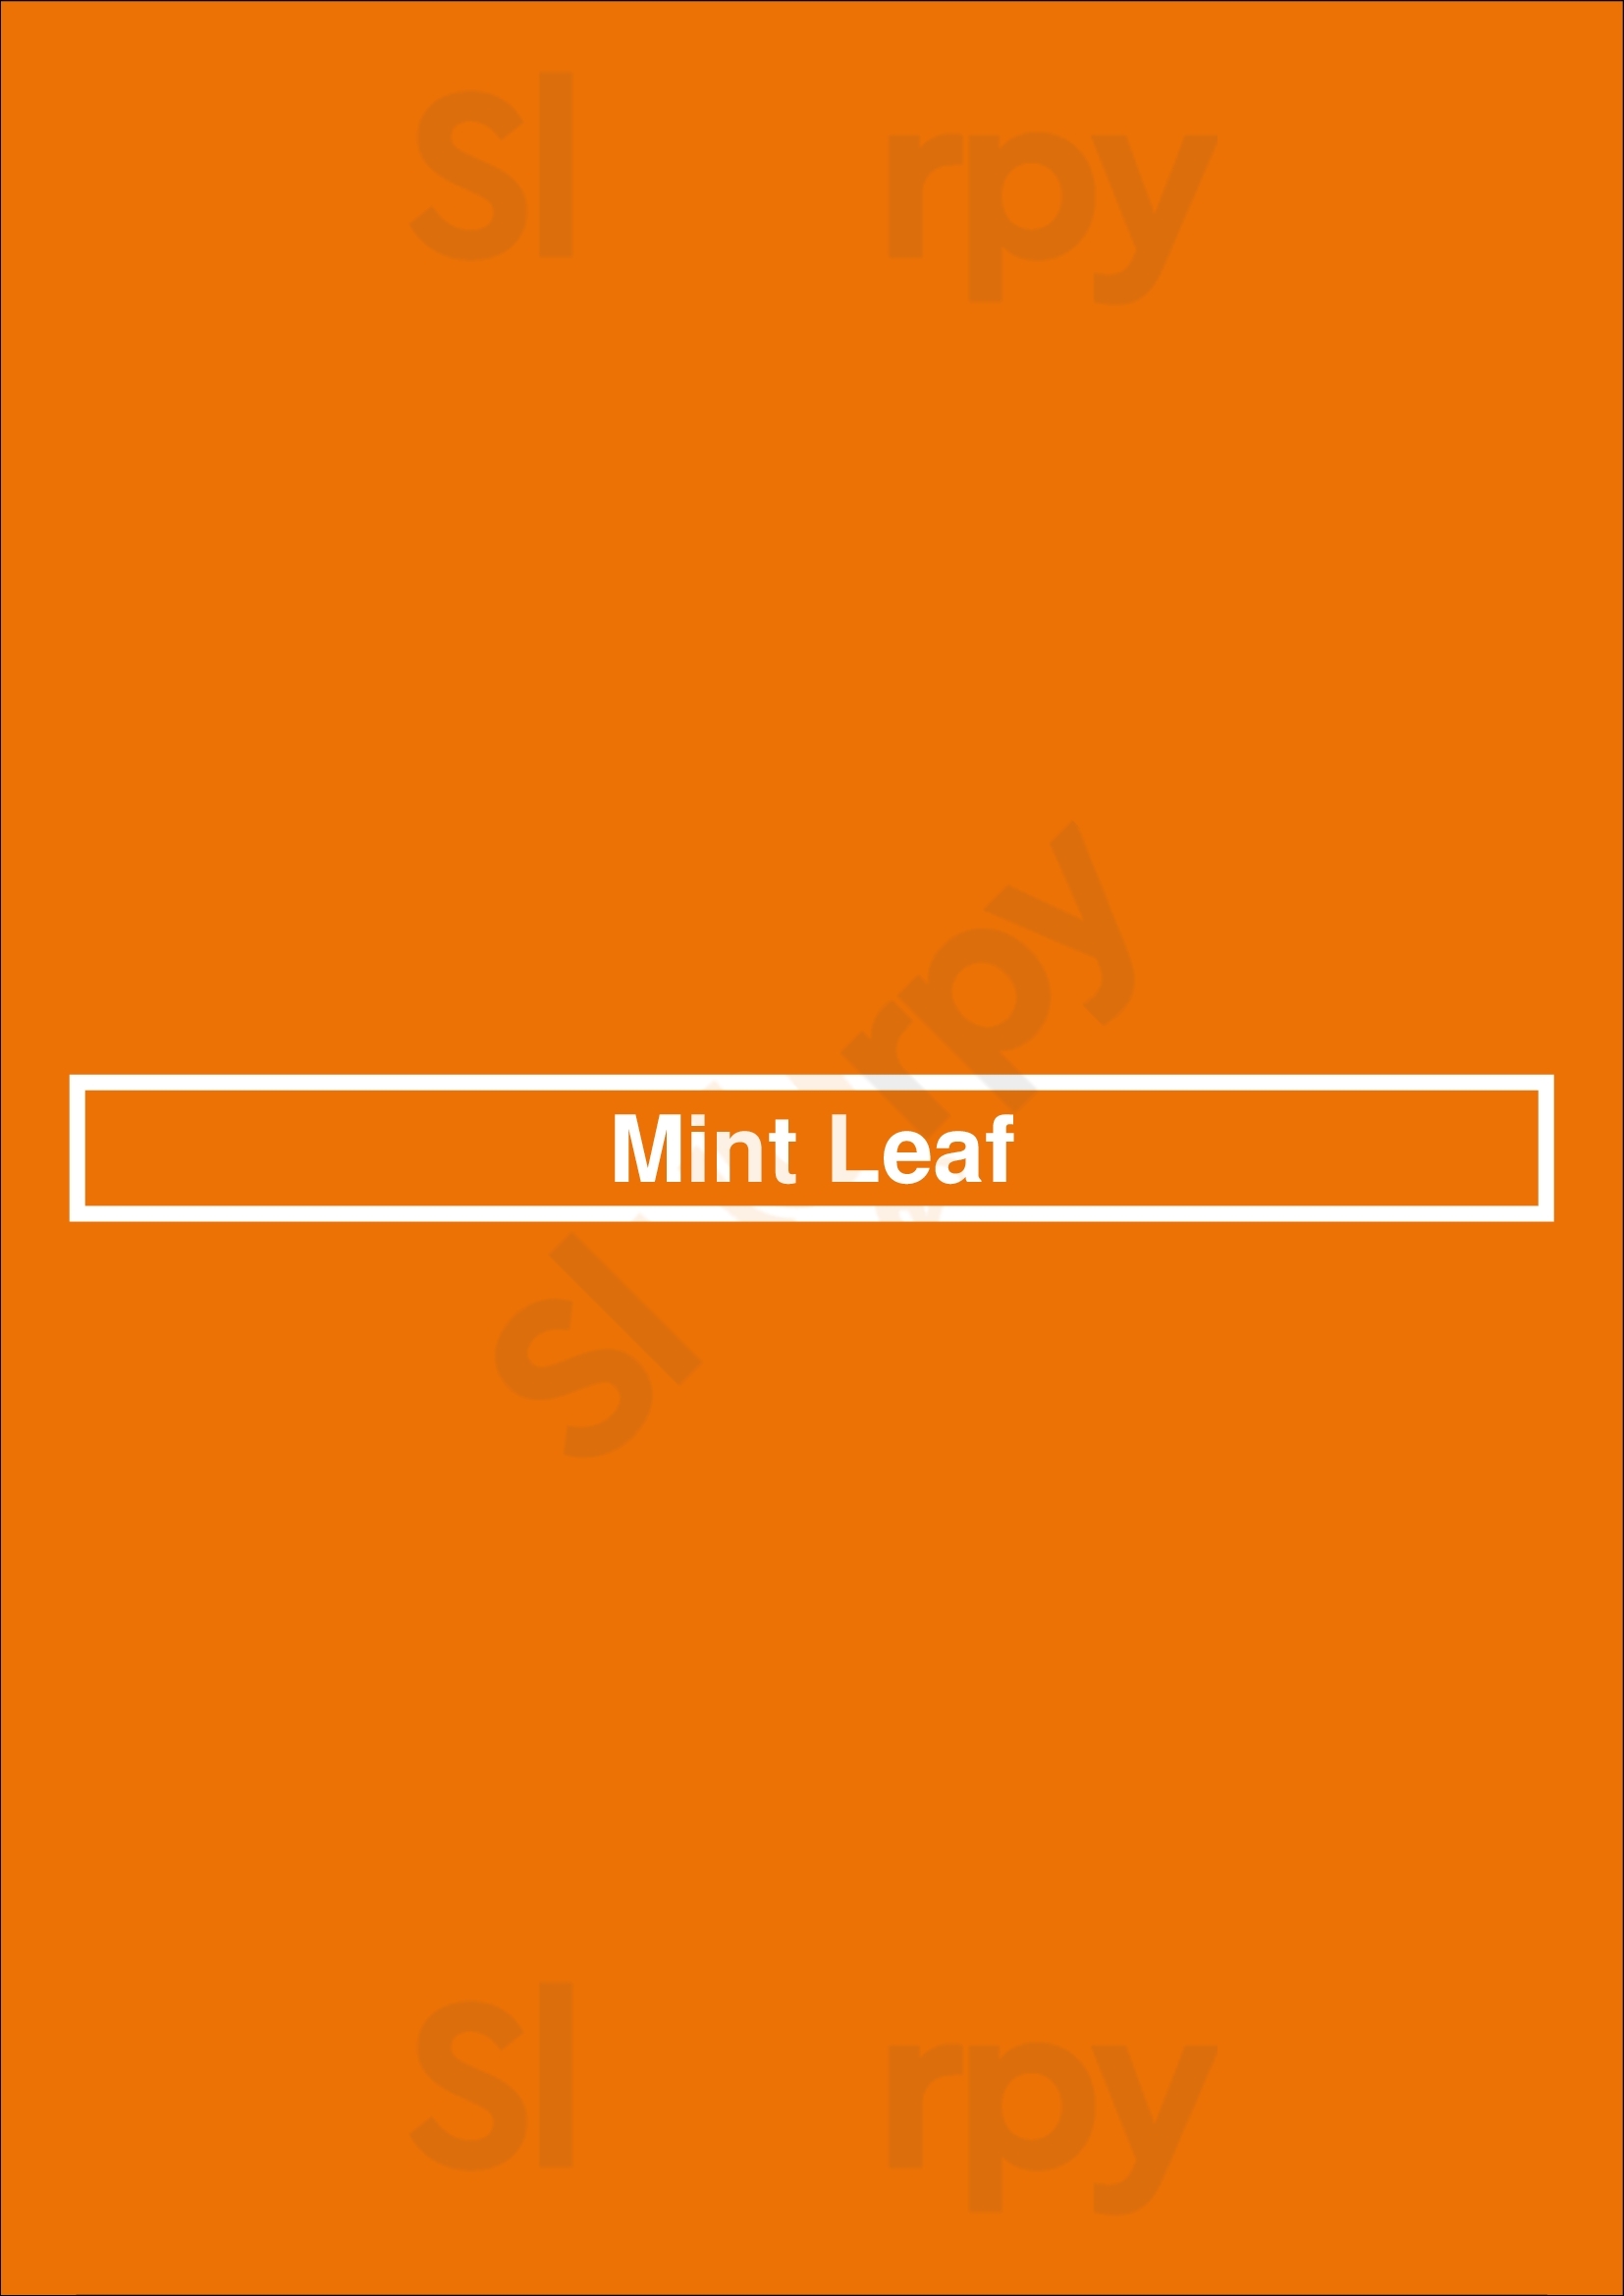 Mint Leaf Coral Gables Menu - 1